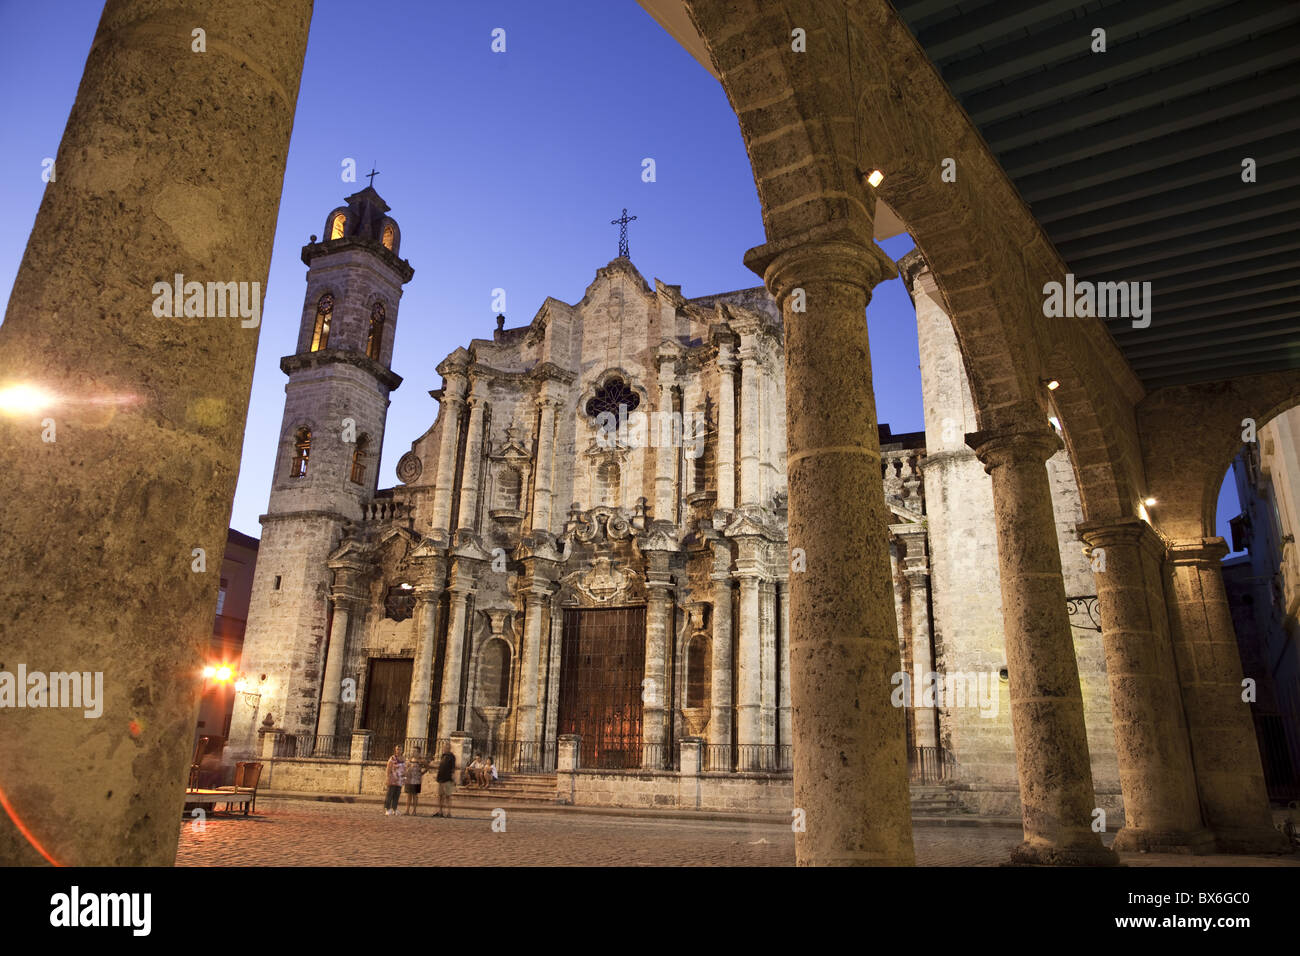 Cathédrale de San Cristobal, datant de 1748, dans la Plaza de la Catedral, La Vieille Havane, patrimoine mondial de l'UNESCO, La Havane, Cuba Banque D'Images